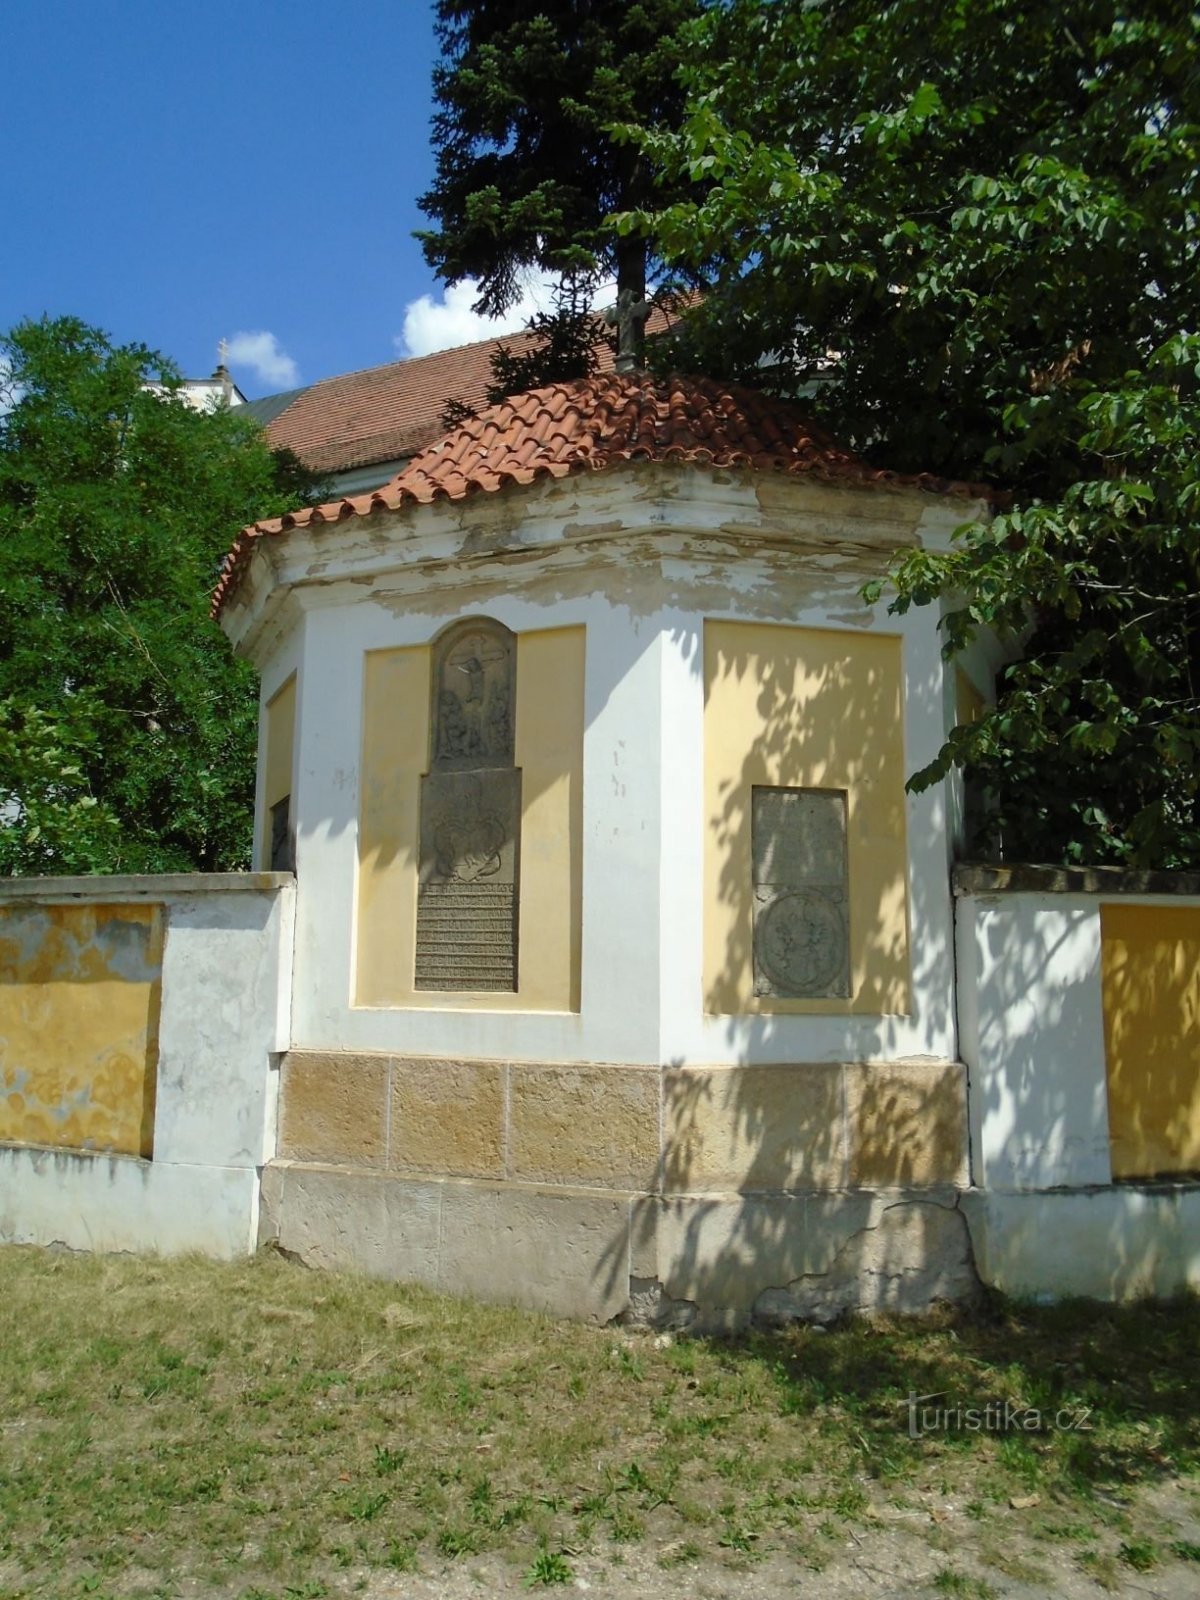 Morgă în stil baroc în cimitirul vechi (Dobřenice, 21.6.2018)